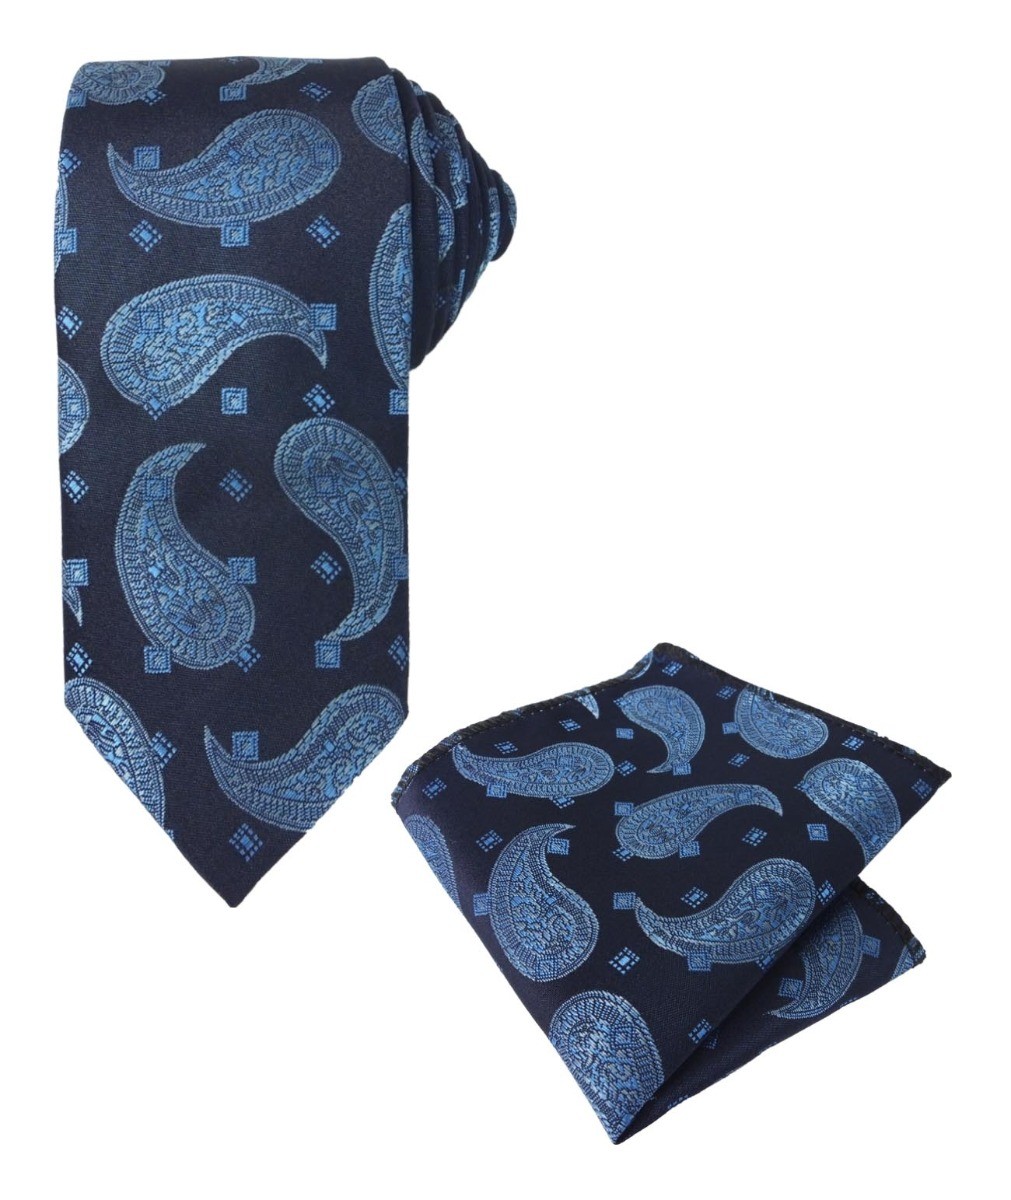 Ensemble cravate et mouchoir de poche formel avec motifs paisley pour garçons et hommes - Bleu marine - bleu